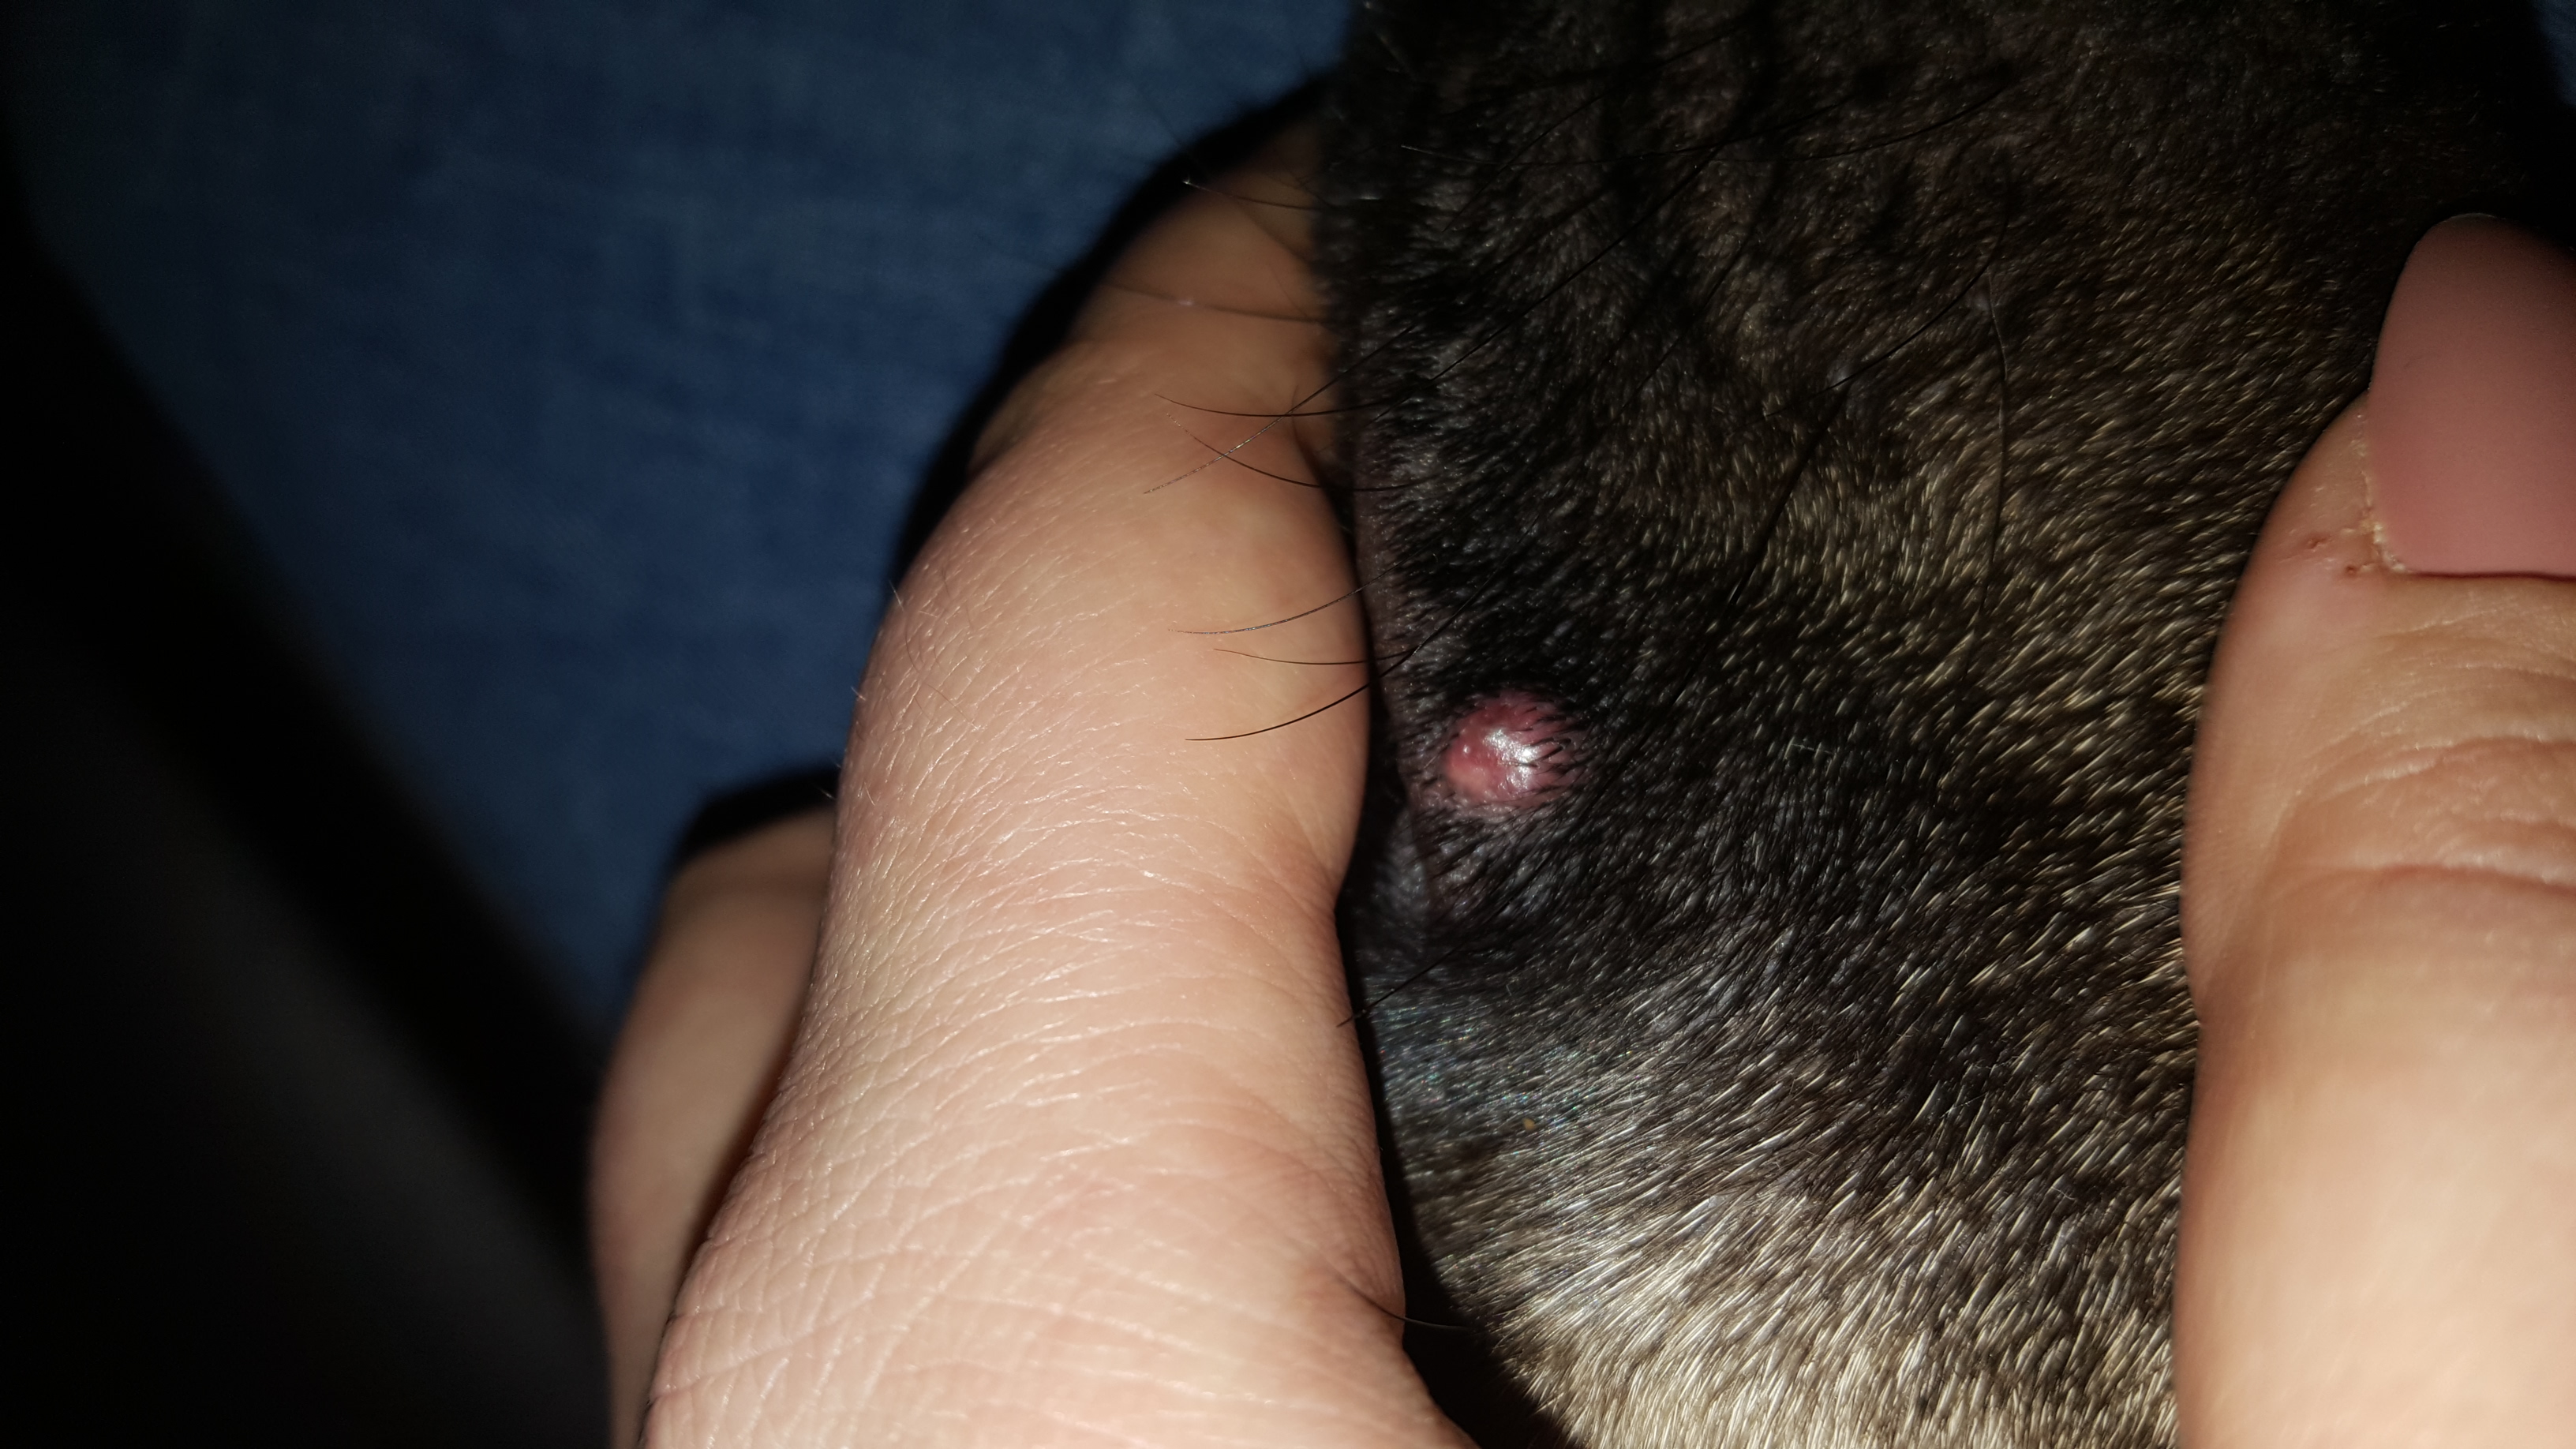 Mein hund hat eine rote beule an der schnauze Pickel? (Tierarzt, Rasse